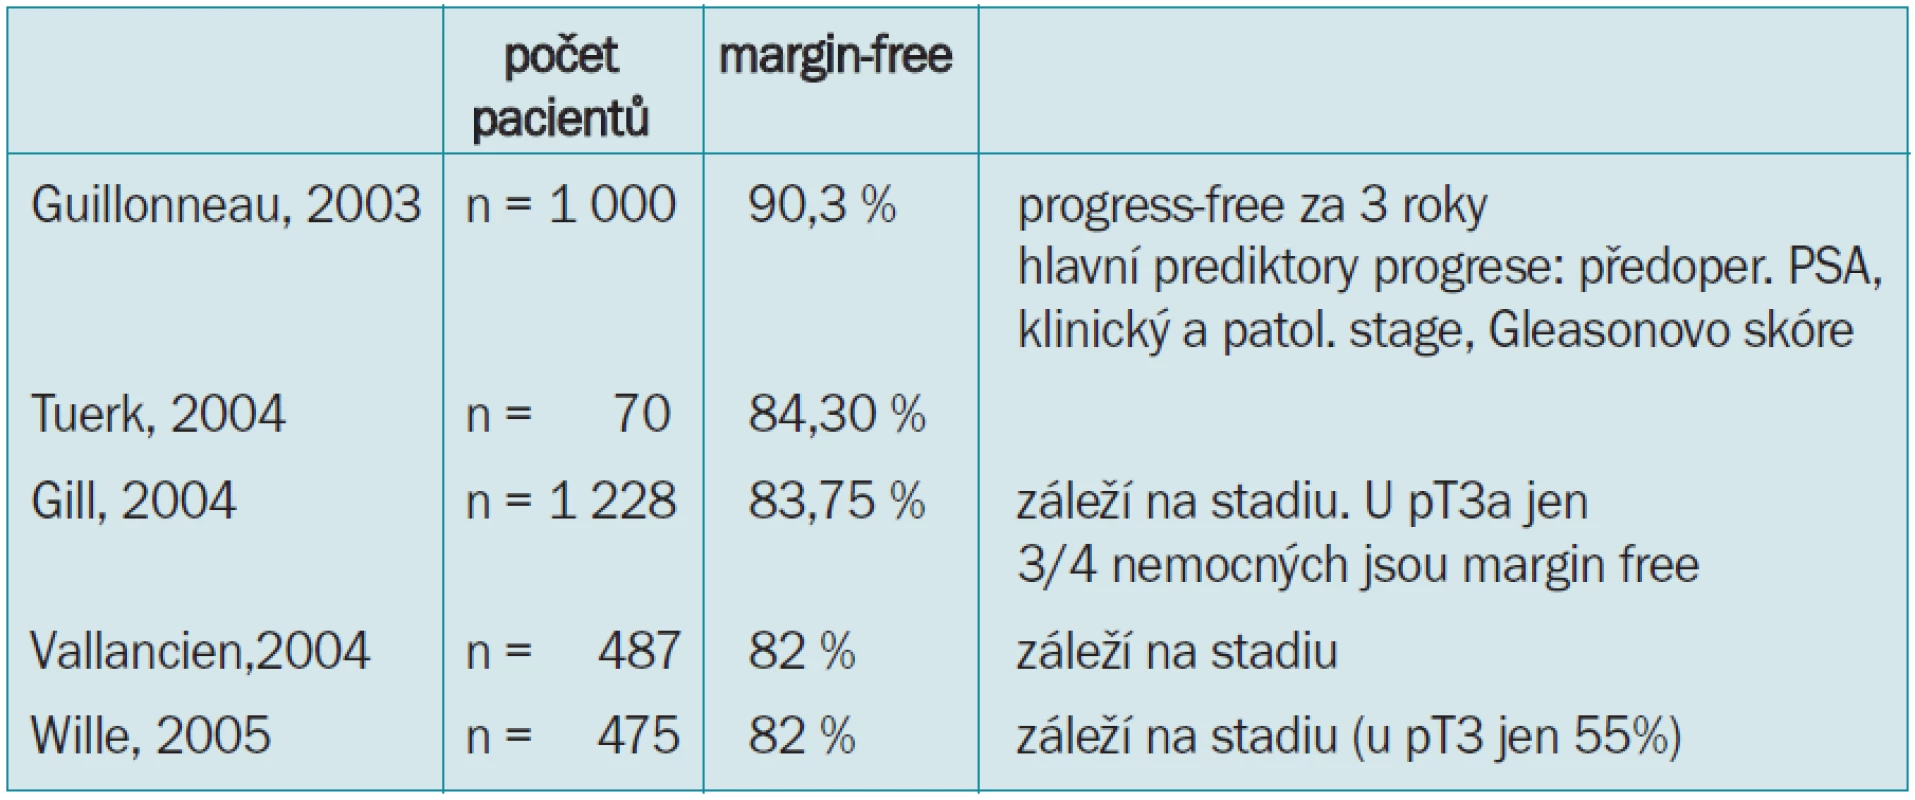 Status free-margin po laparoskopických radikálních prostatektomiích na vybraných pracovištích (všechny citovaní autoři zdůrazňují velký rozdíl mezi stadii T2 a T3, kdy dochází k nárůstu až o 30 %).